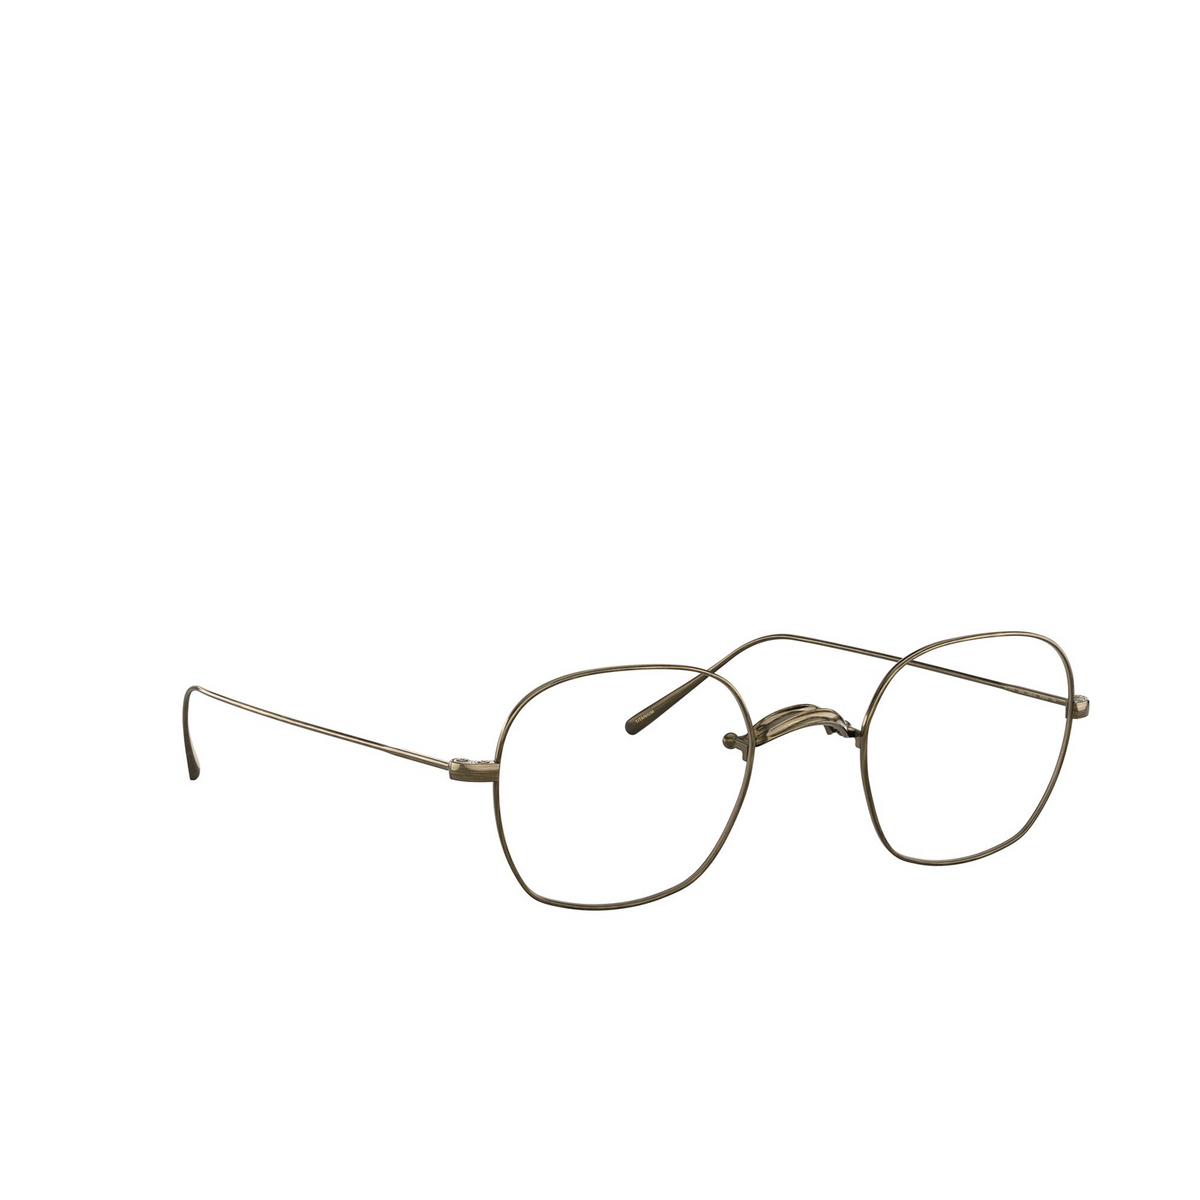 Oliver Peoples® Square Eyeglasses: Carles OV1270T color Antique Gold 5300 - 2/3.